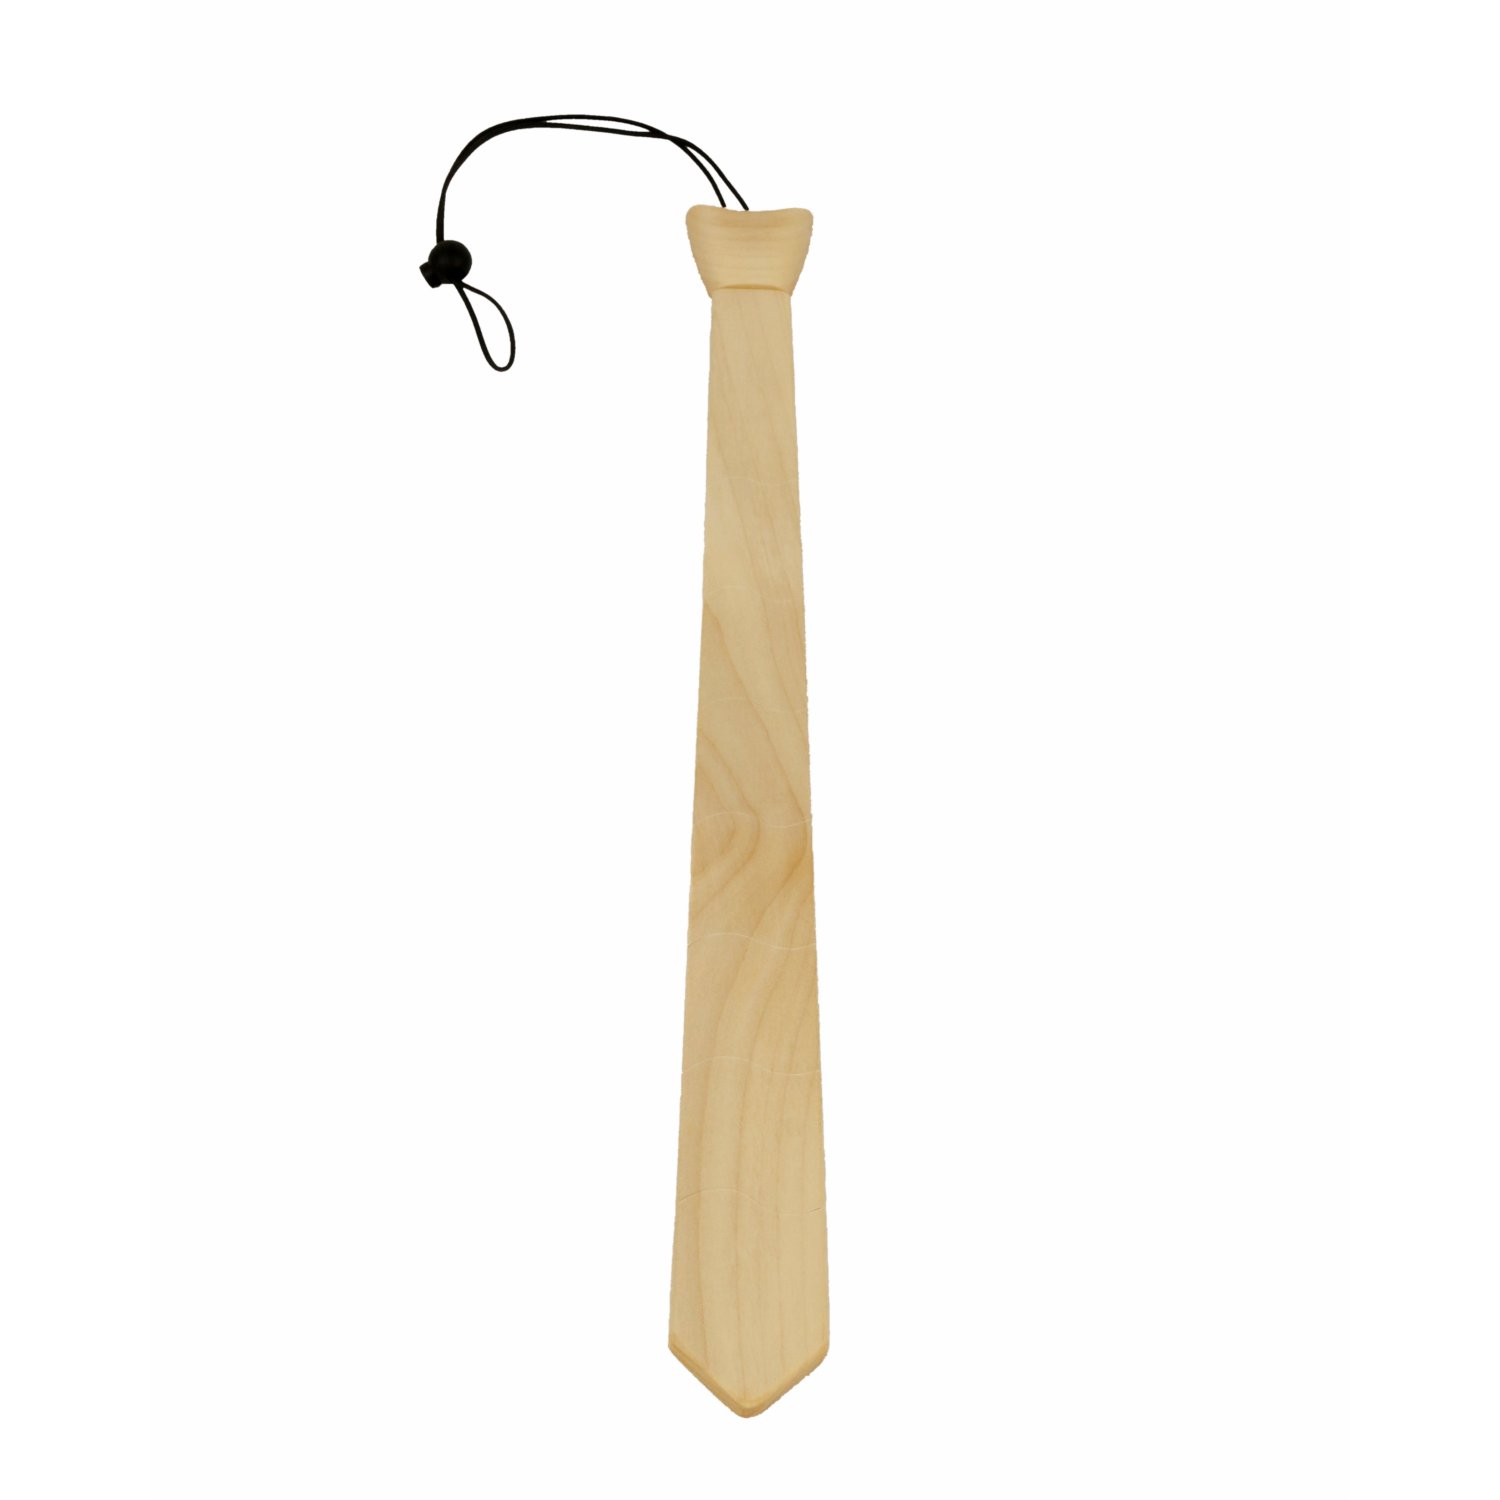 Krawatte aus Ahornholz mit bewglichen Elementen